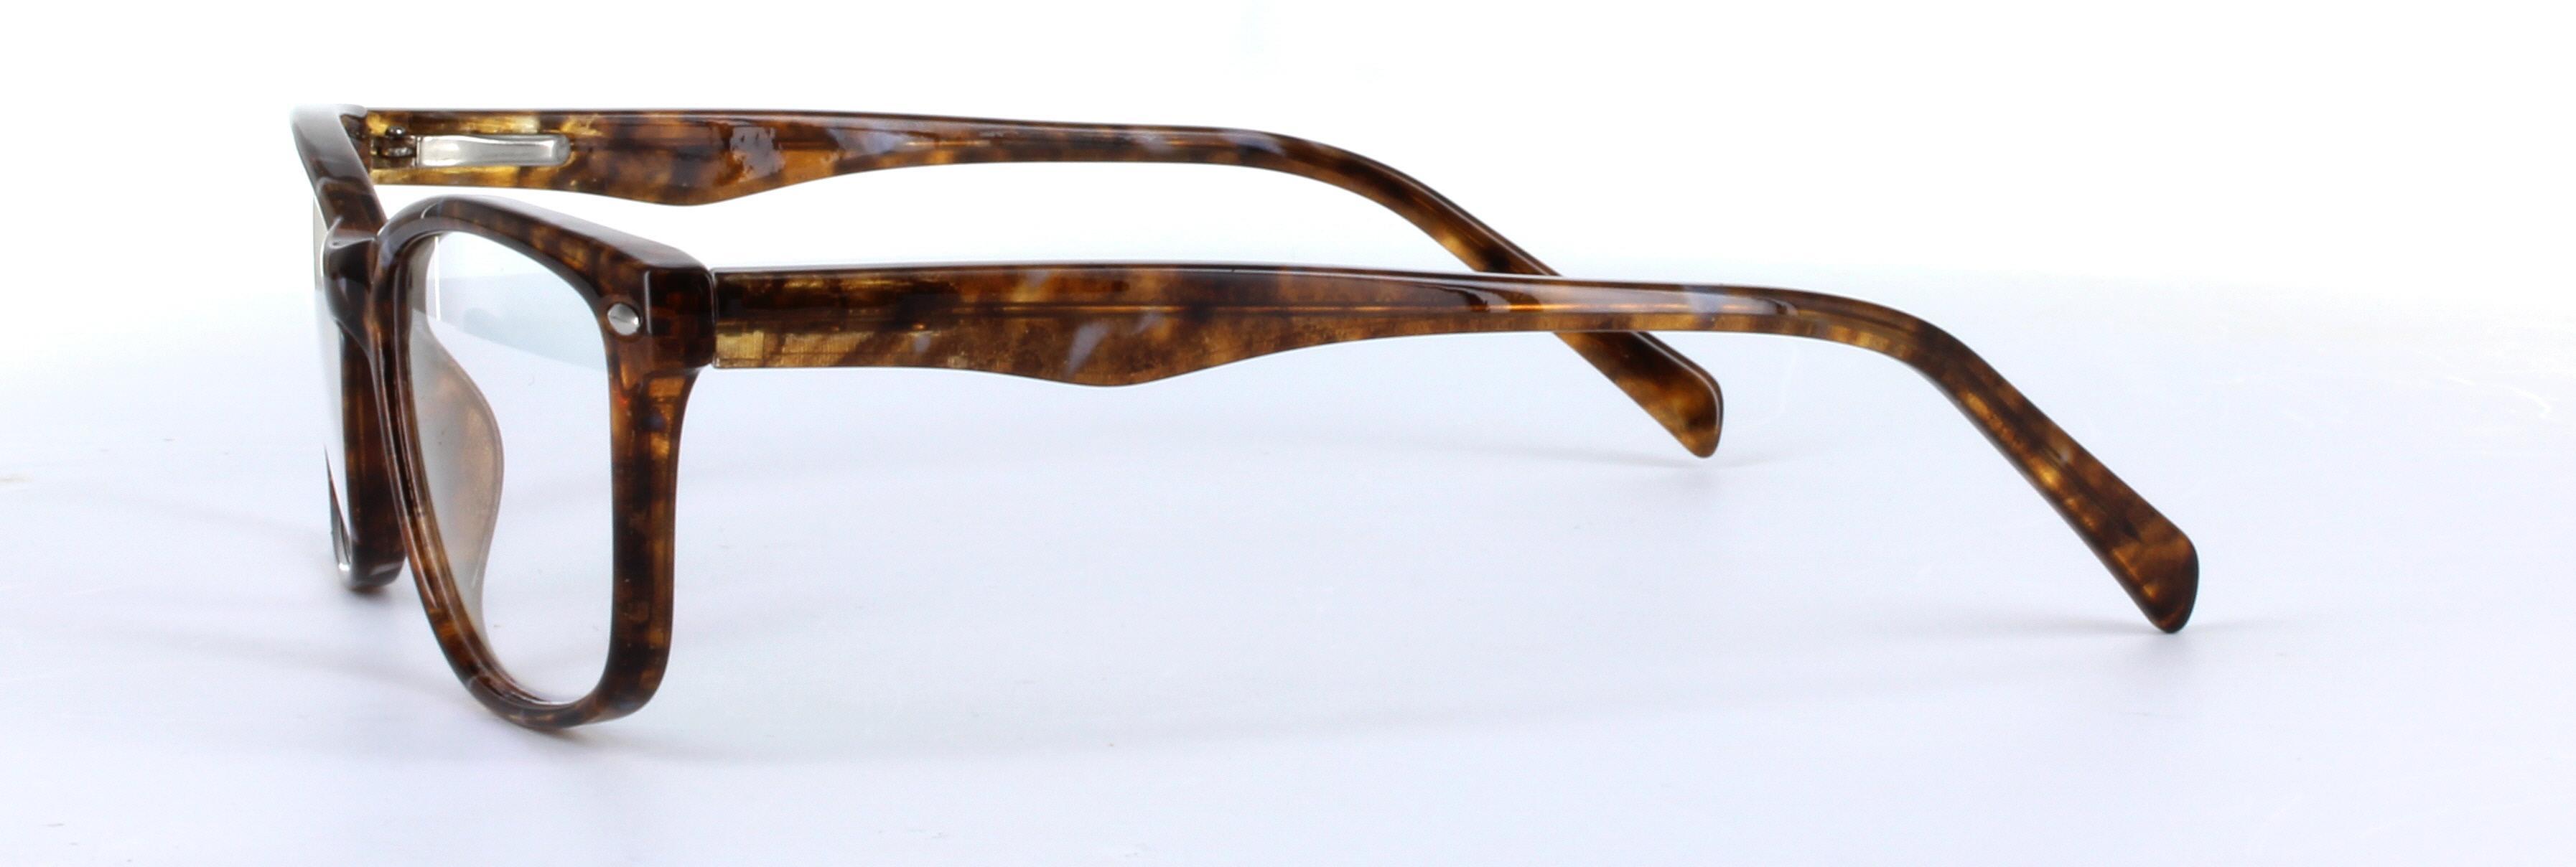 Kamryn Tortoise Full Rim Oval Rectangular Plastic Glasses - Image View 2